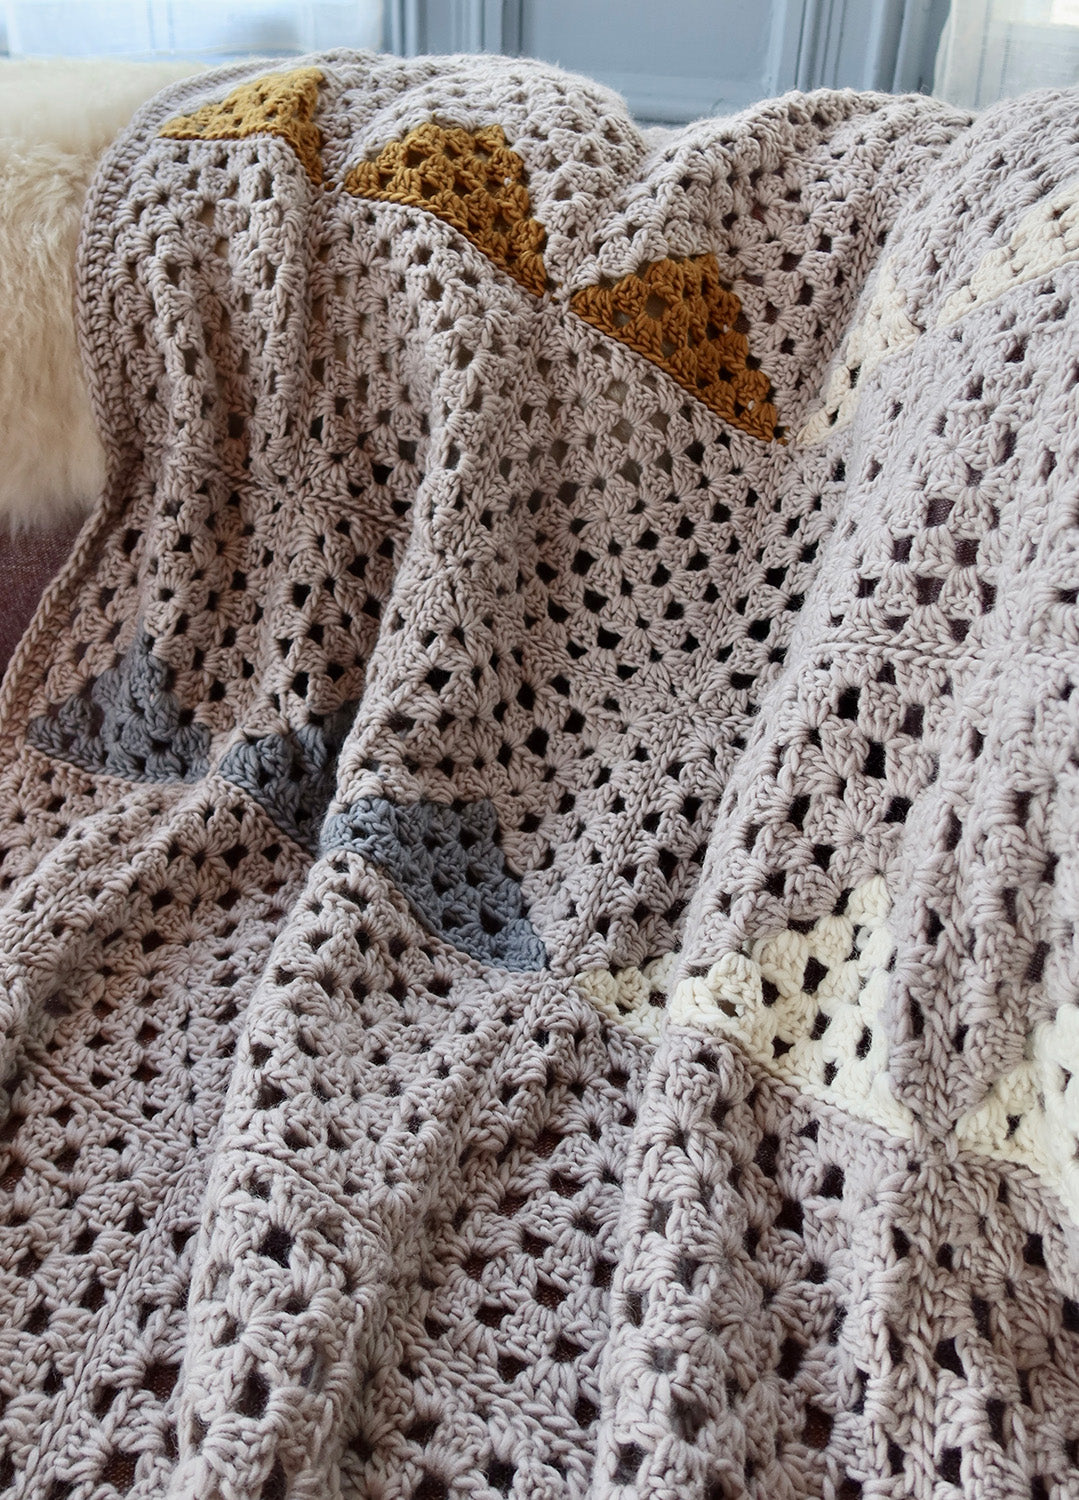 https://weareknitters.com/cdn/shop/files/crochet-kit-petite-wool-landen_granny-square-blanket_en_02.jpg?v=1700151797&width=1500